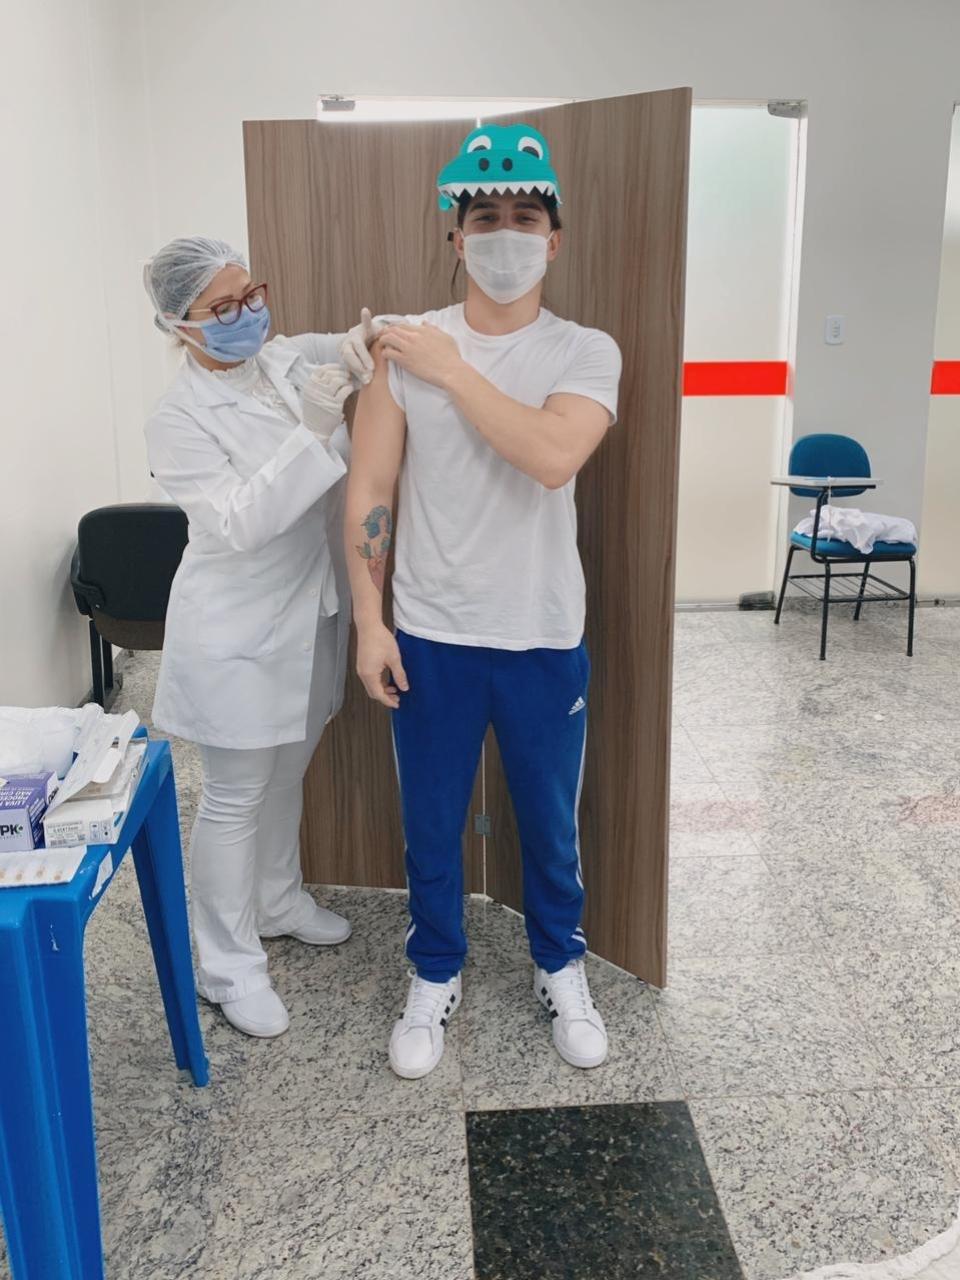 AP: Técnico em enfermagem toma vacina contra covid-19 fantasiado de jacaré  - 23/01/2021 - UOL Notícias